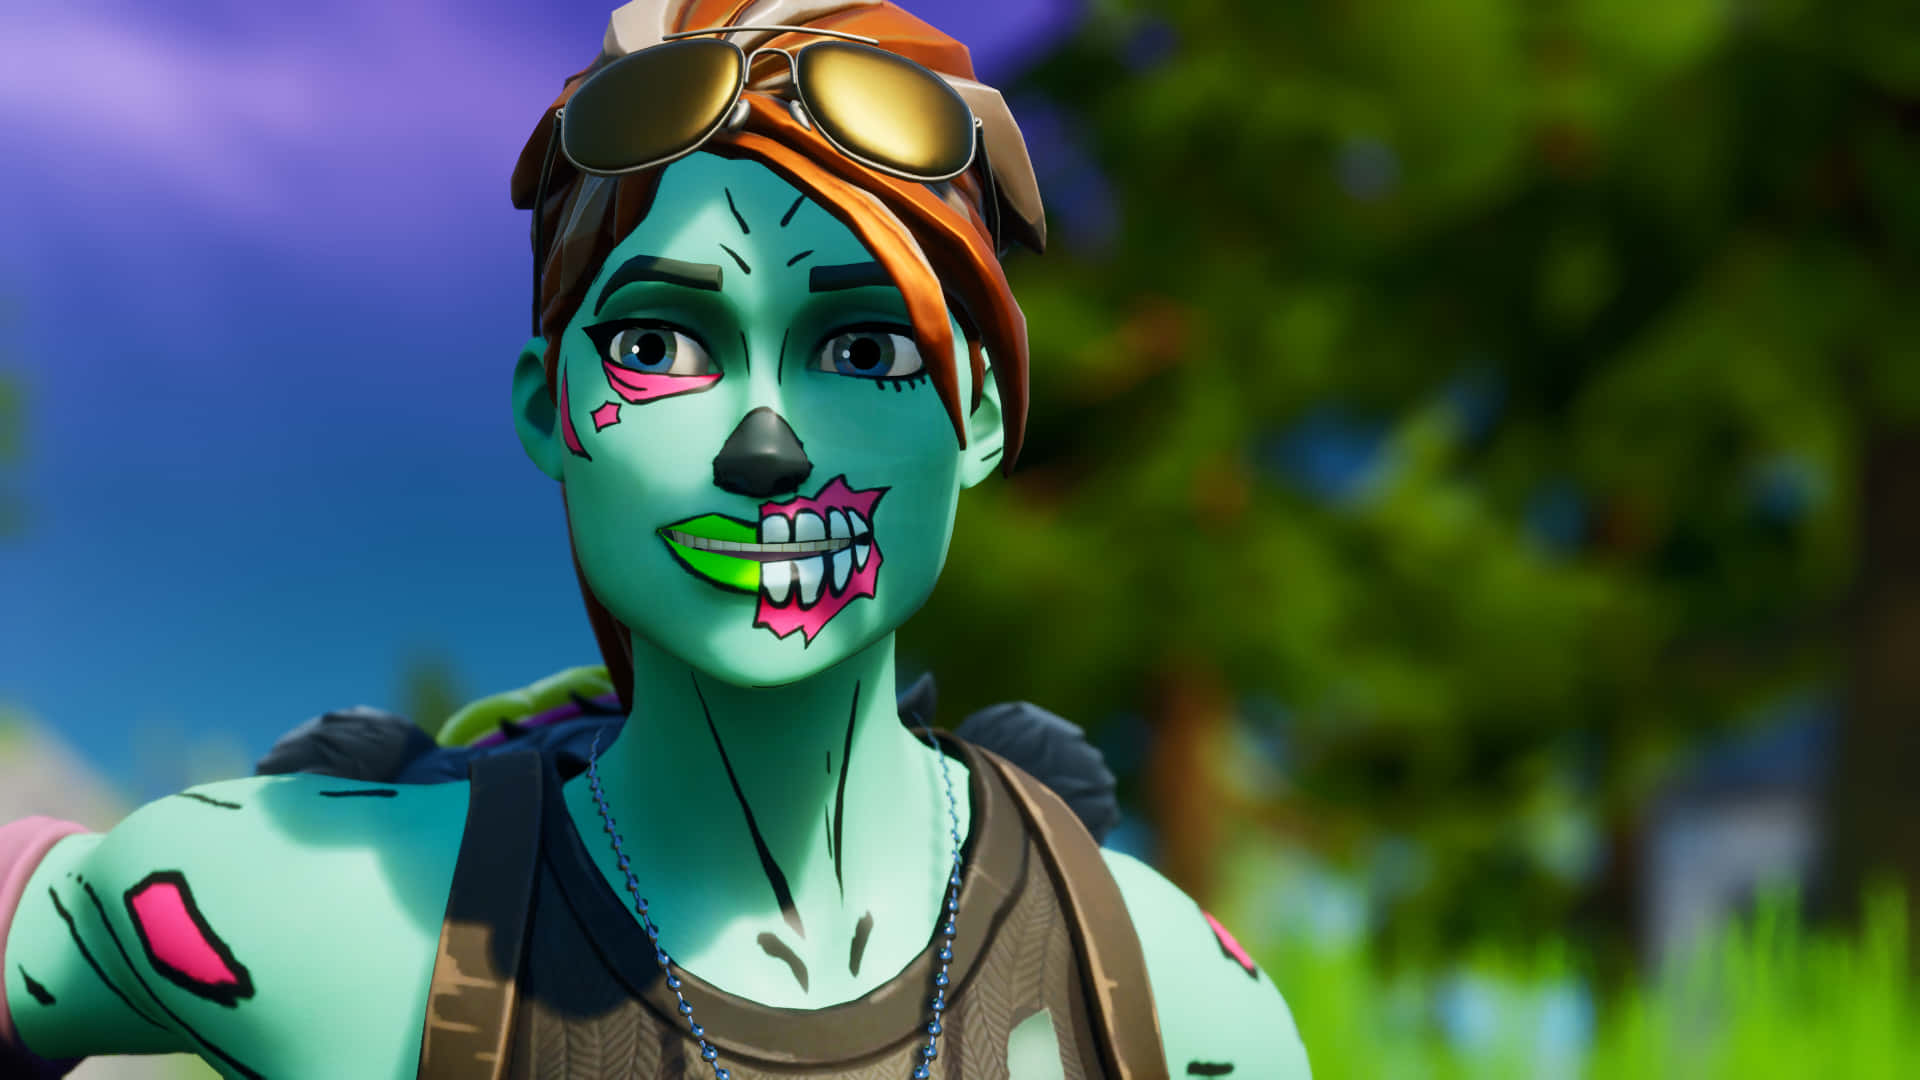 Fortnite Zombies - En zombie med et grønt ansigt og øjne med en sort baggrund Wallpaper